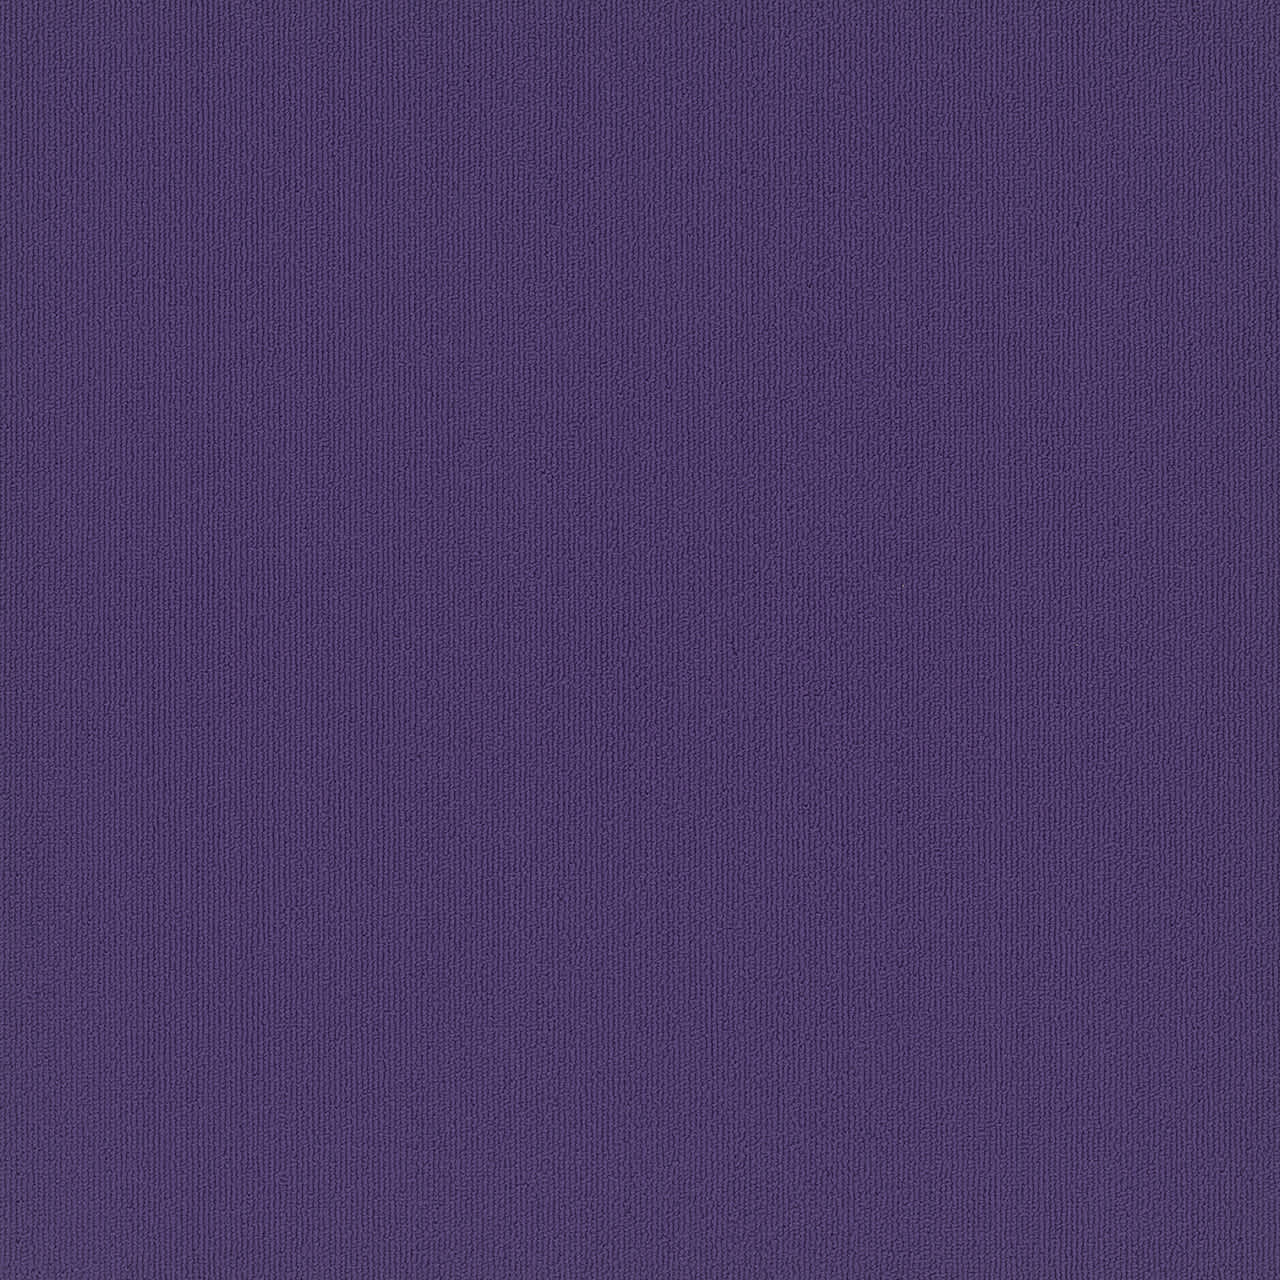 Royale Purple